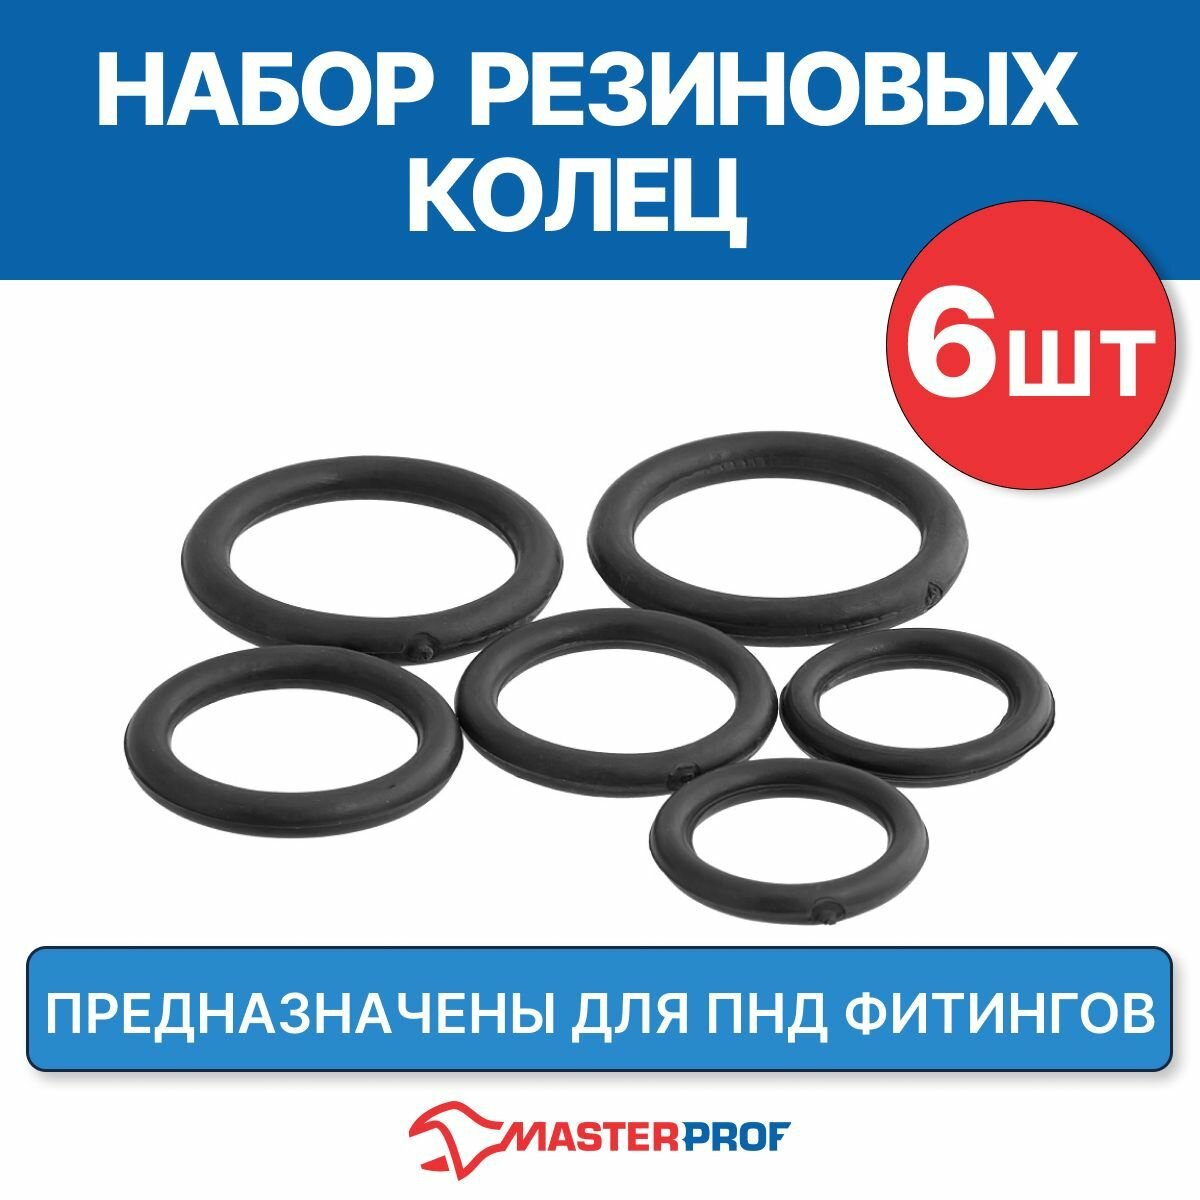 Набор резиновых колец для ПНД MasterProf 13 шт - фото №8